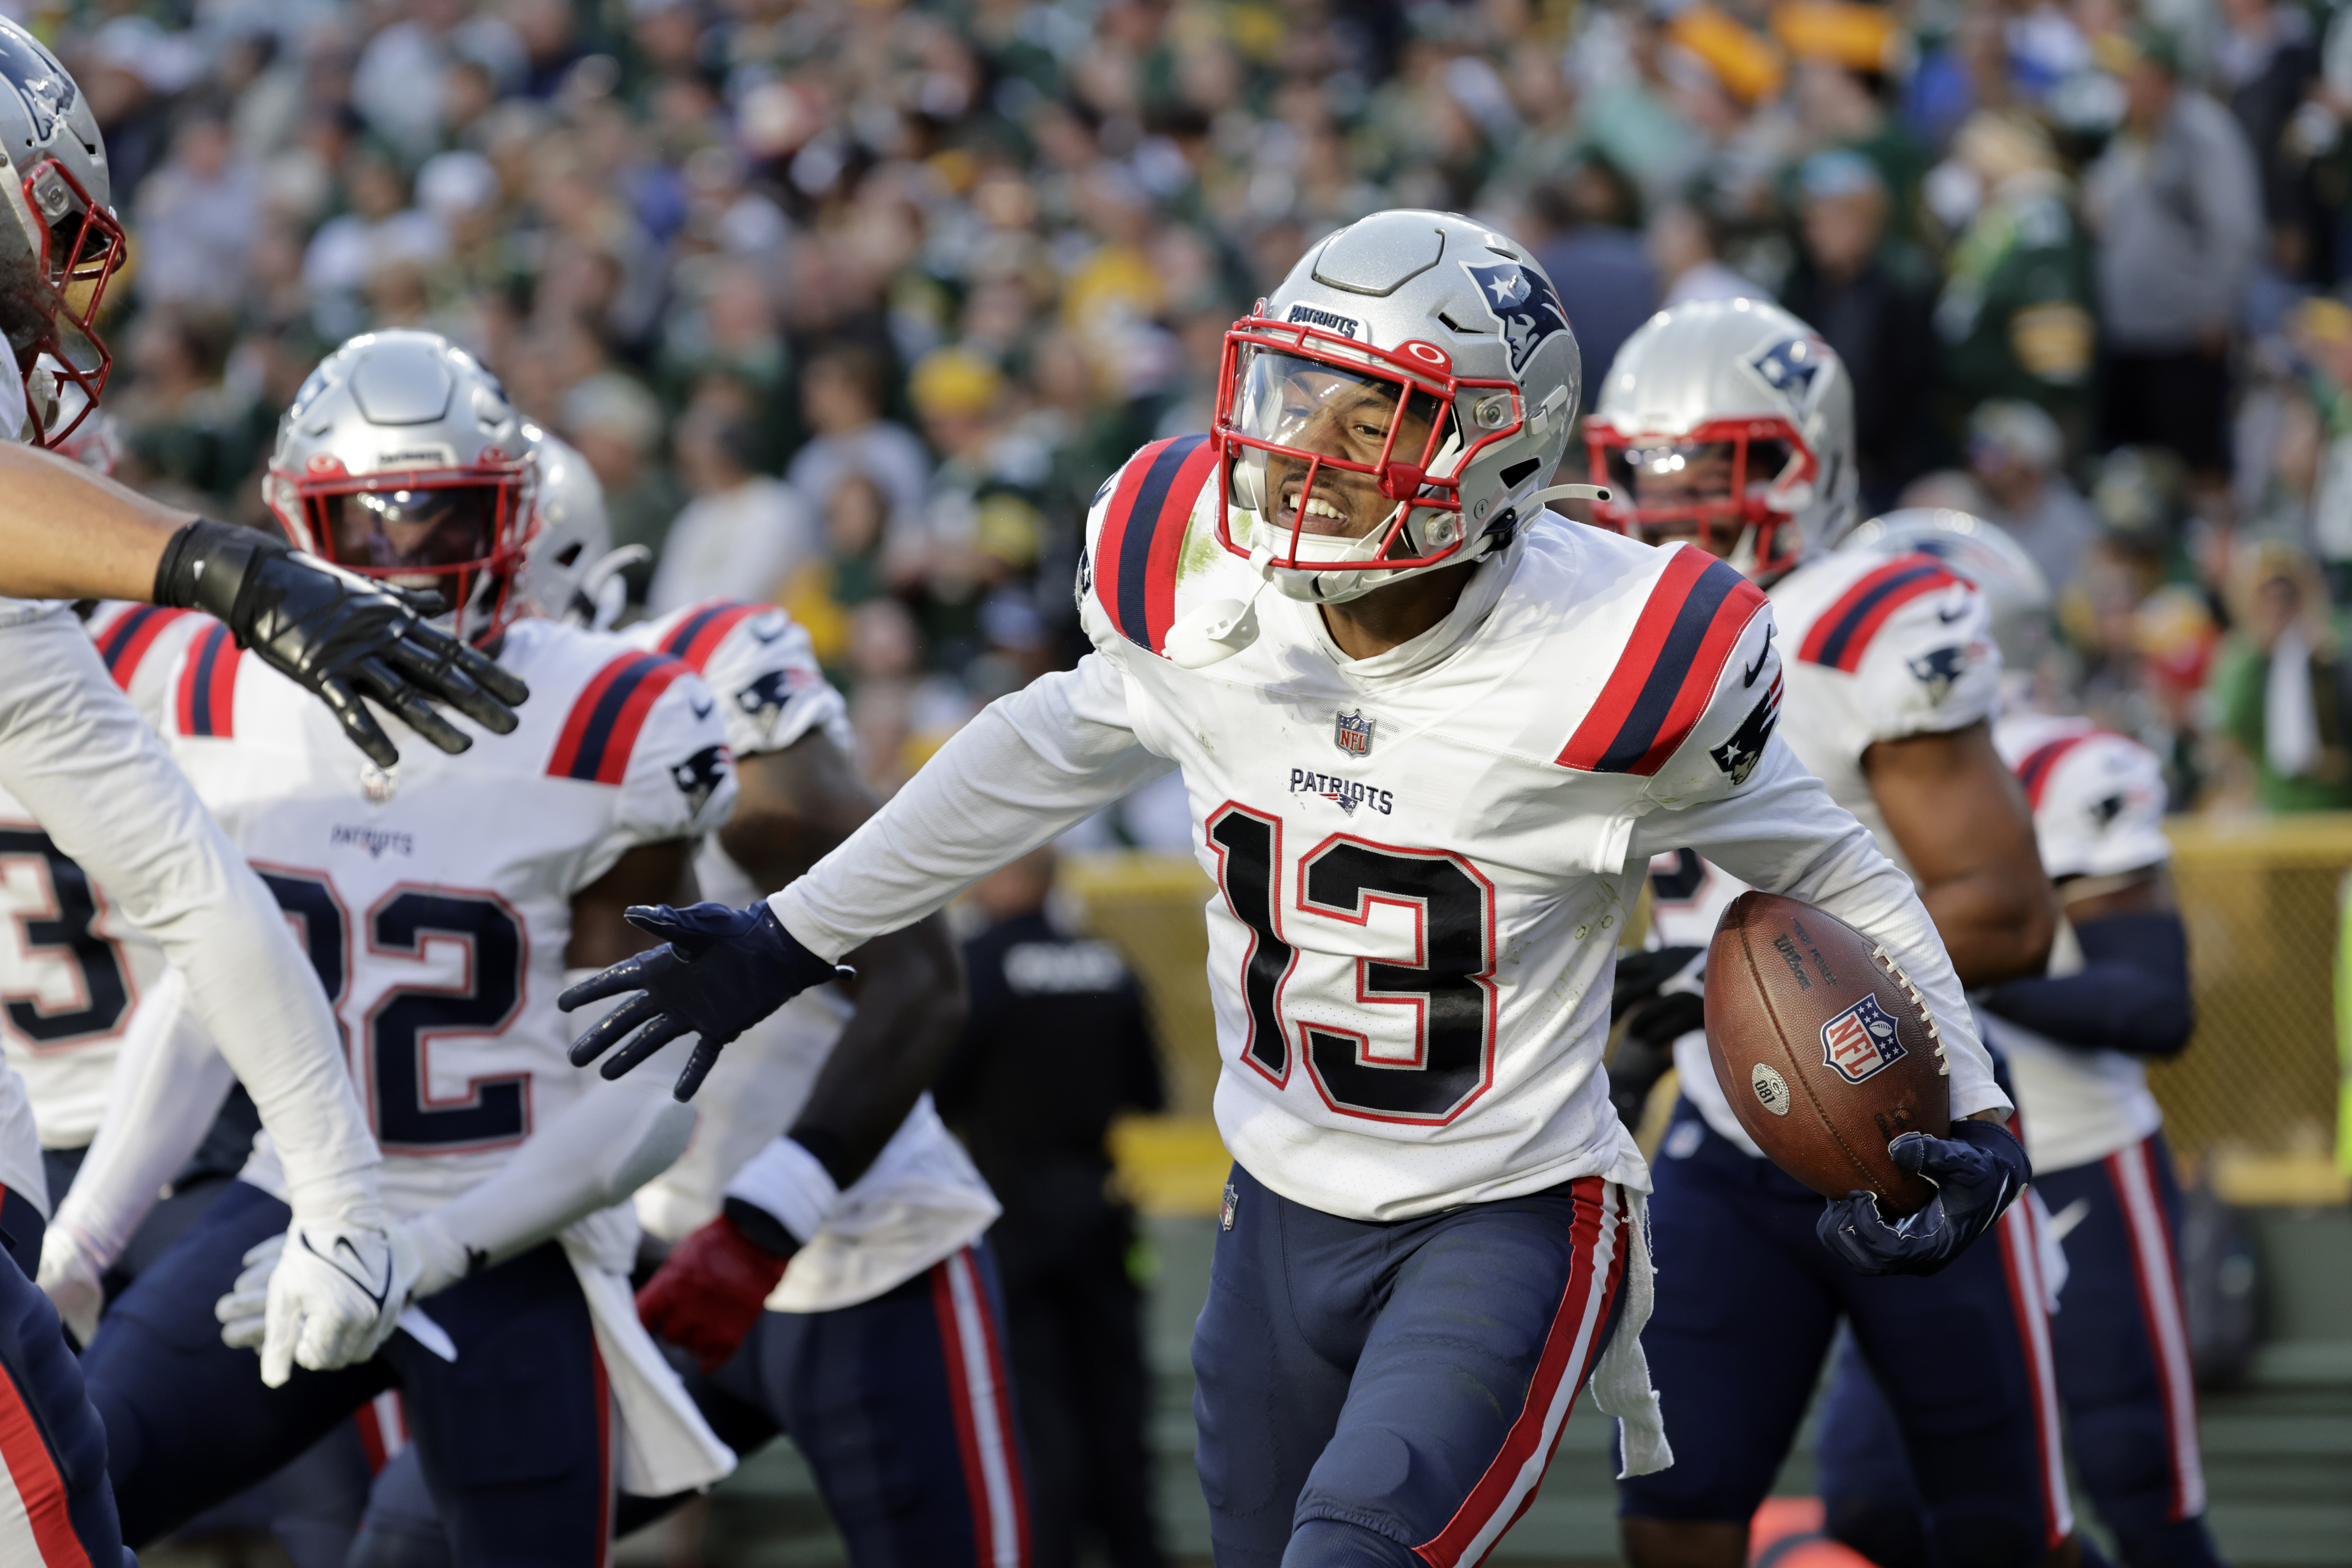 Patriots had 9th best rookie class from 2022 NFL Draft, per ESPN